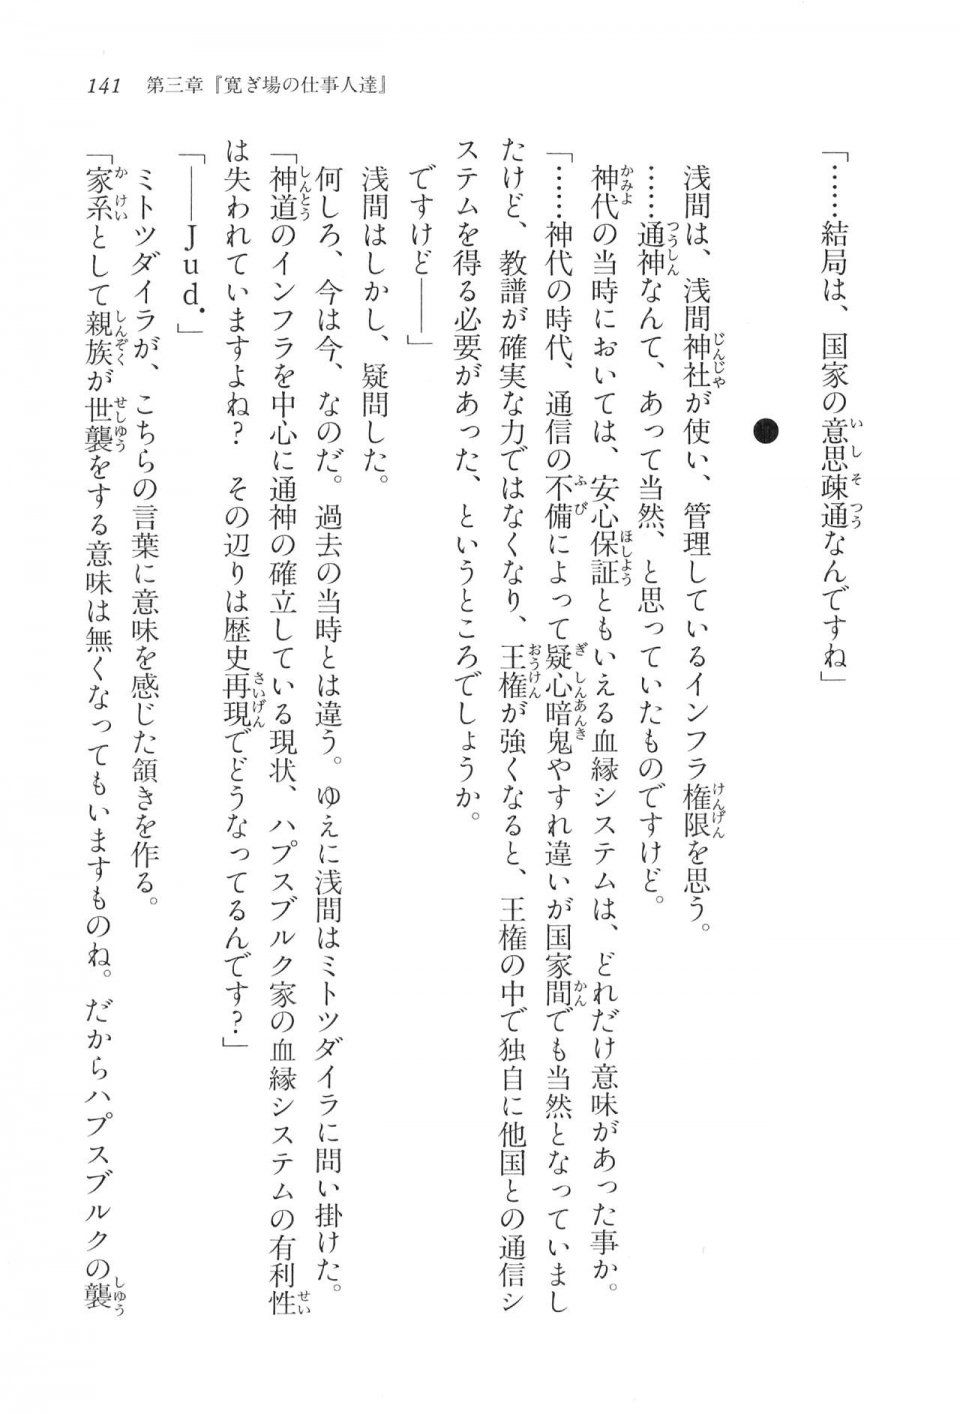 Kyoukai Senjou no Horizon LN Vol 16(7A) - Photo #141